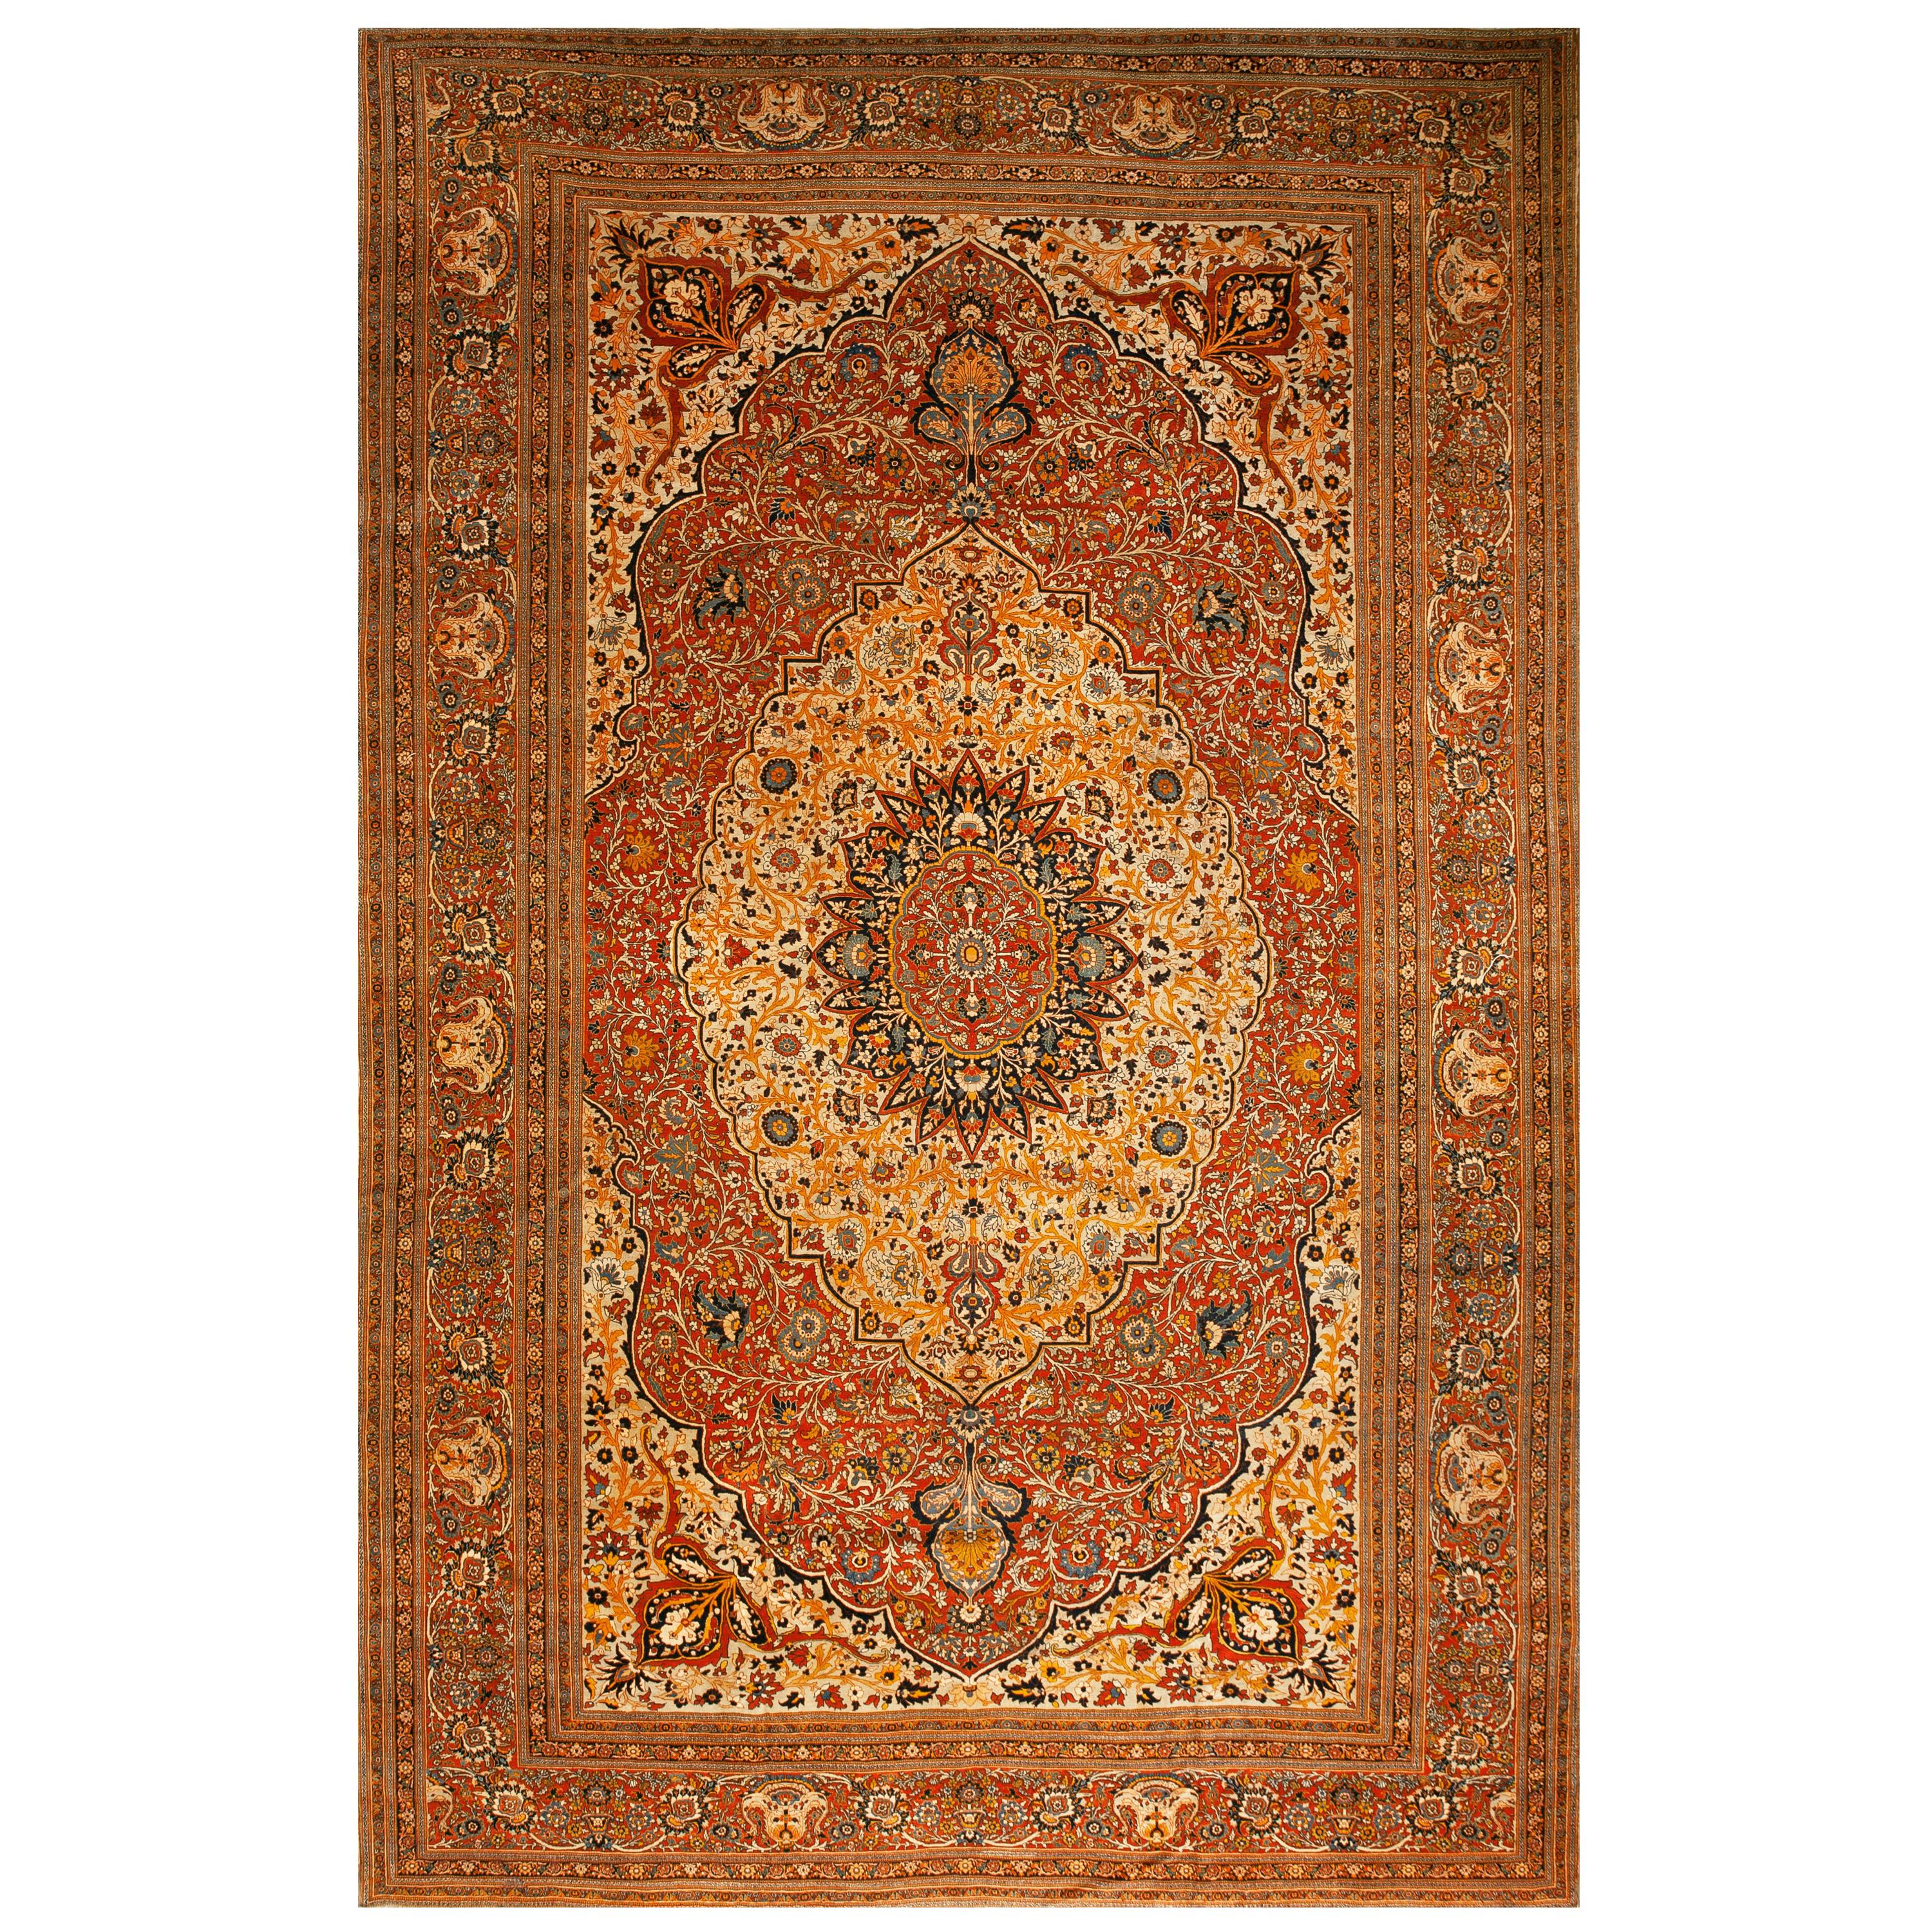 19th Century Persian Tabriz Haji Jalili Carpet ( 10'1" x 15'3" - 307 x 465 )